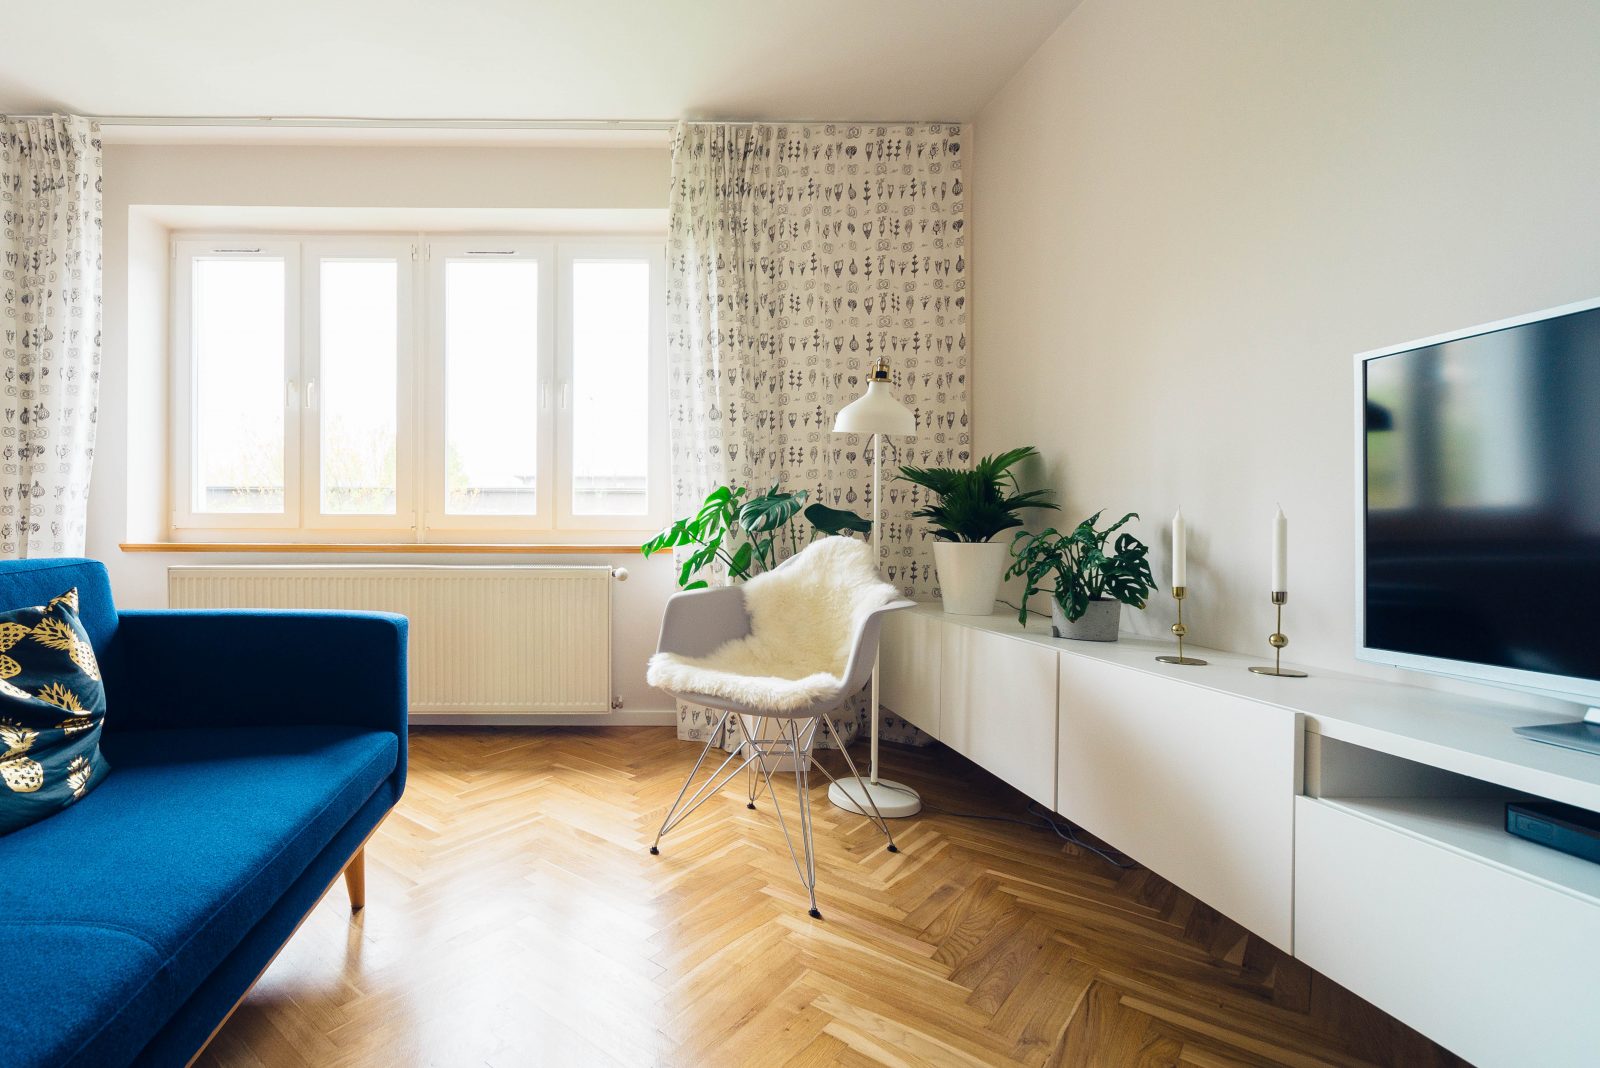 Ikea hack : Les idées pour aménager son logement pour pas cher !